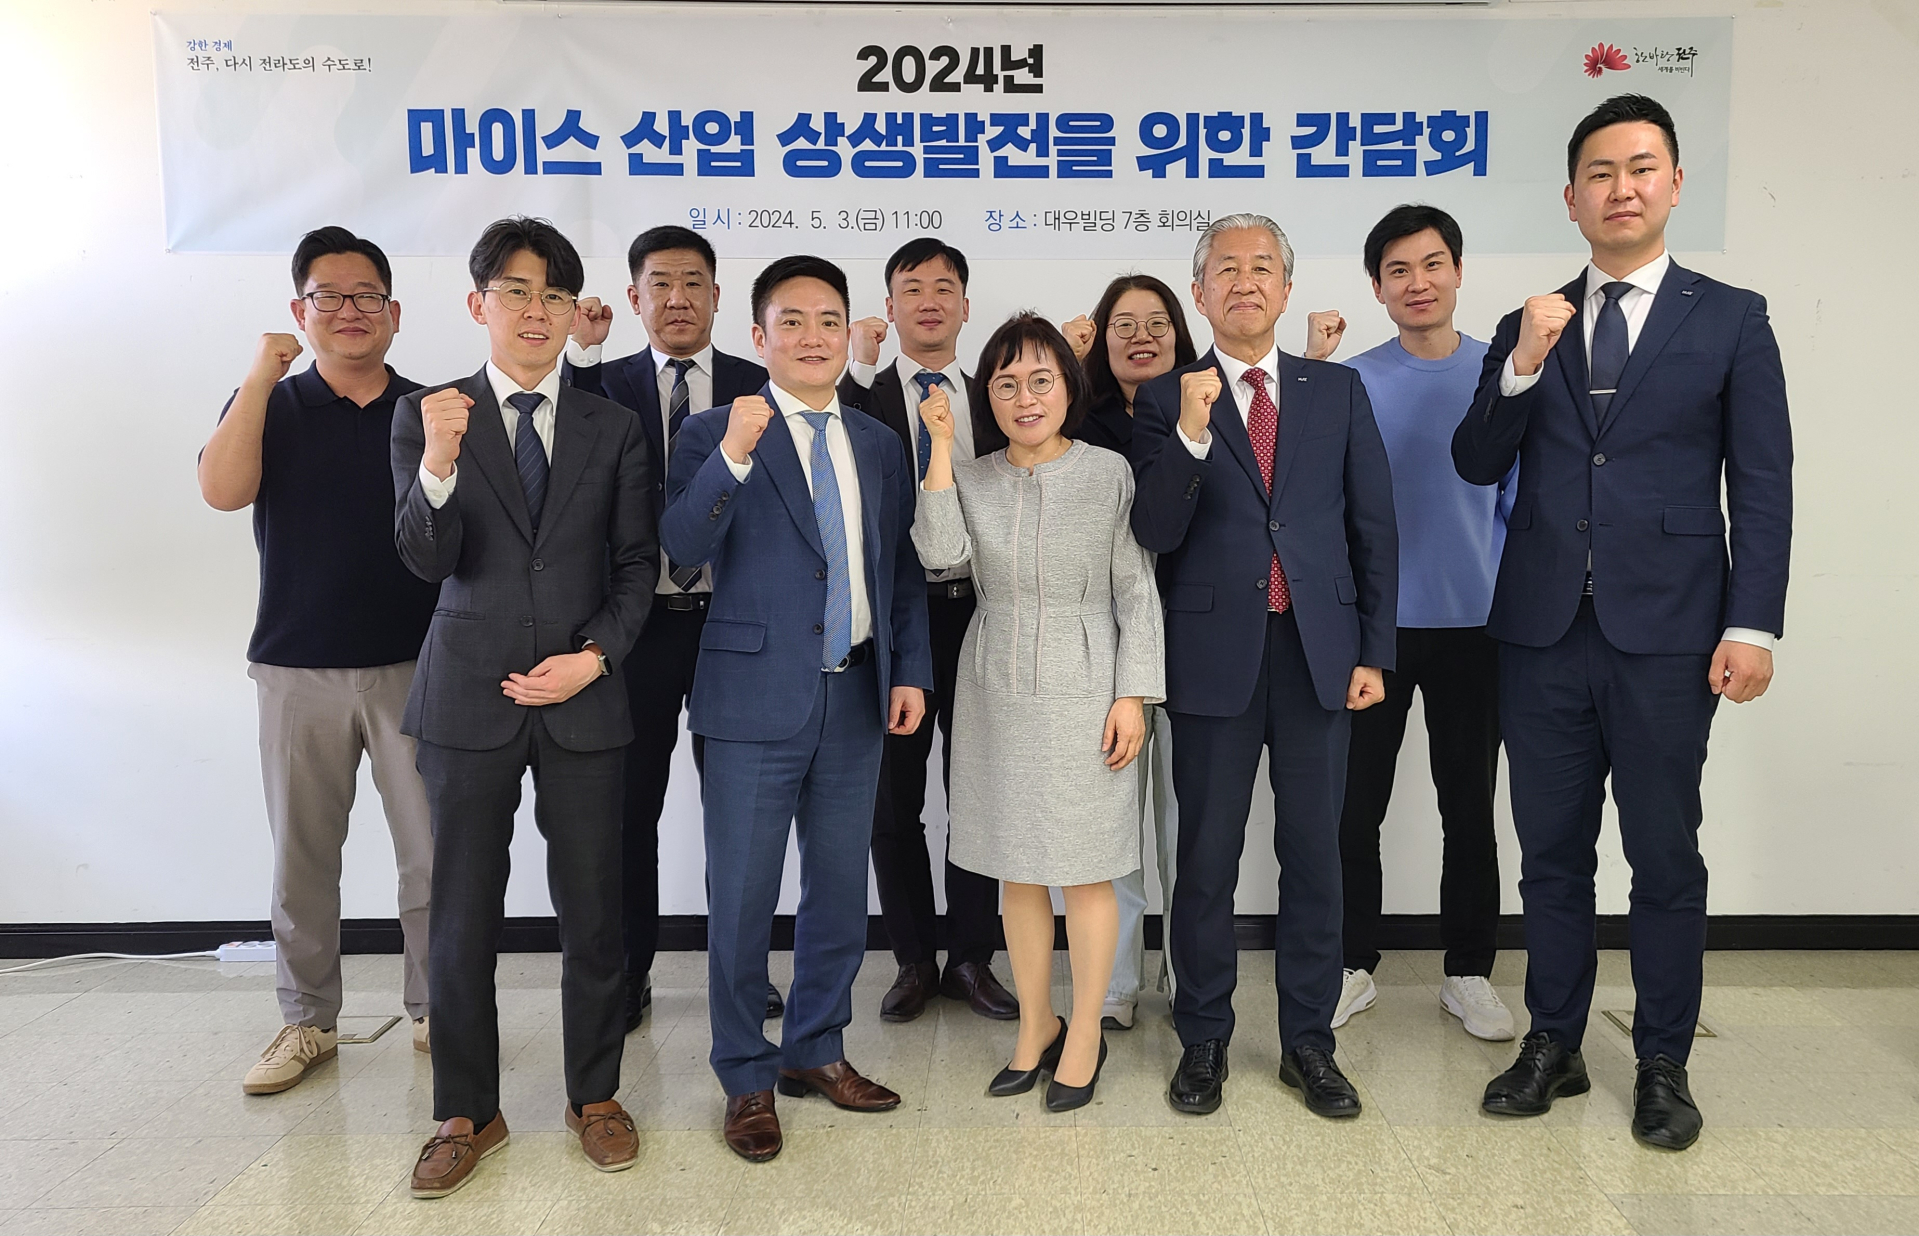 전주시, 마이스산업 활성화 소통 '간담회' 개최